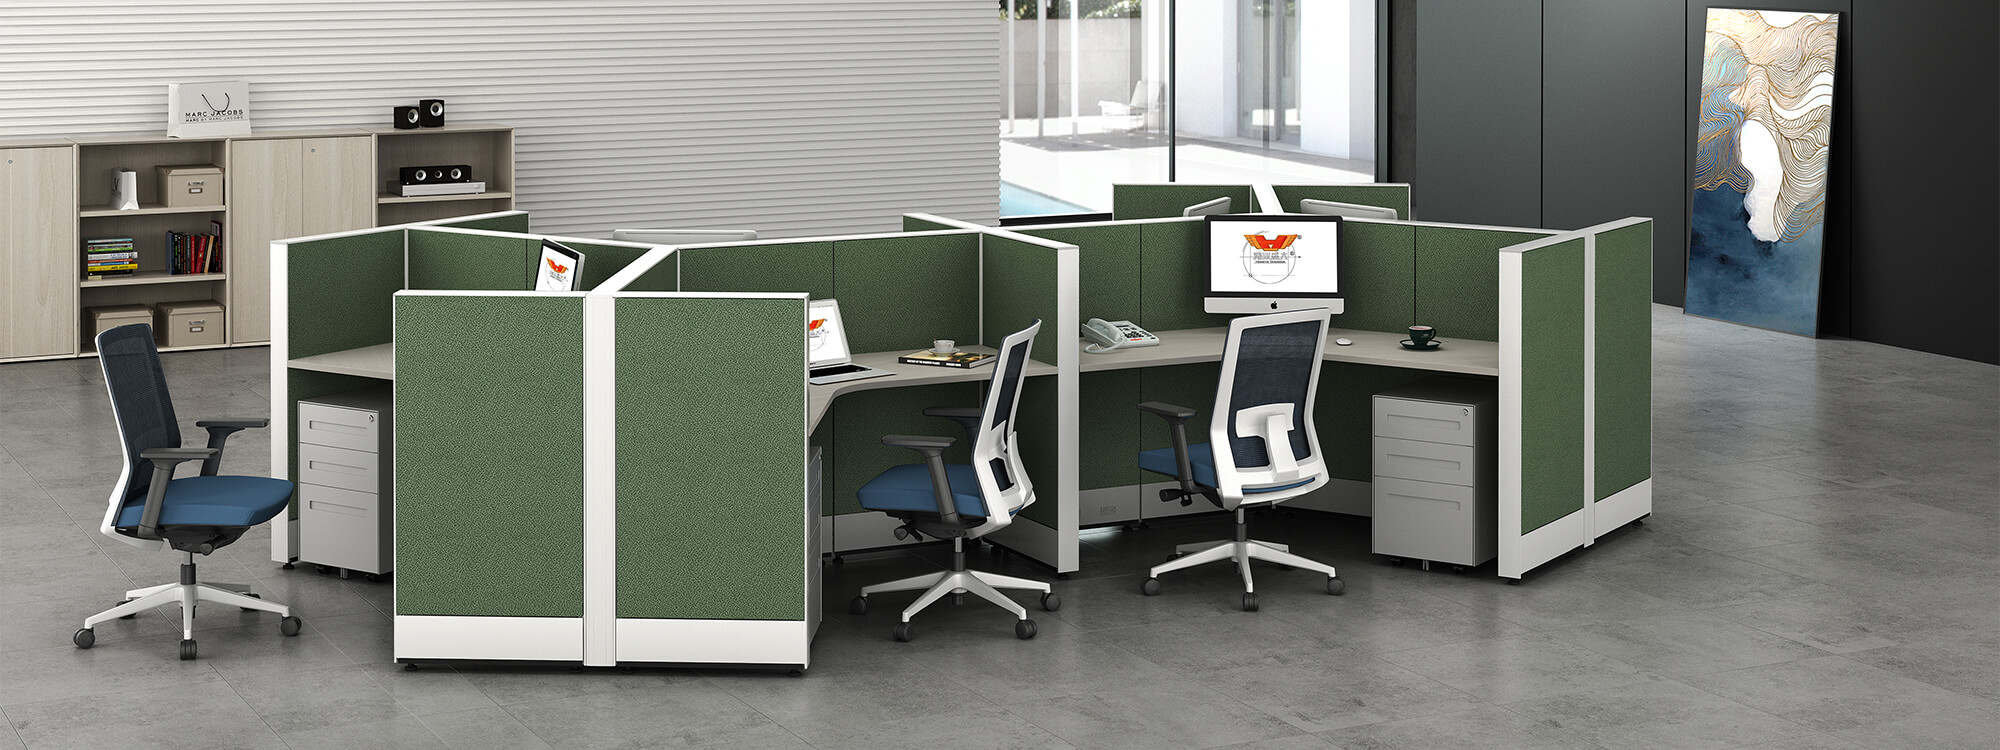 Los cubículos verdes para varias personas acomodan a cada empleado con un espacio separado que reduce las distracciones y aumenta la productividad. 